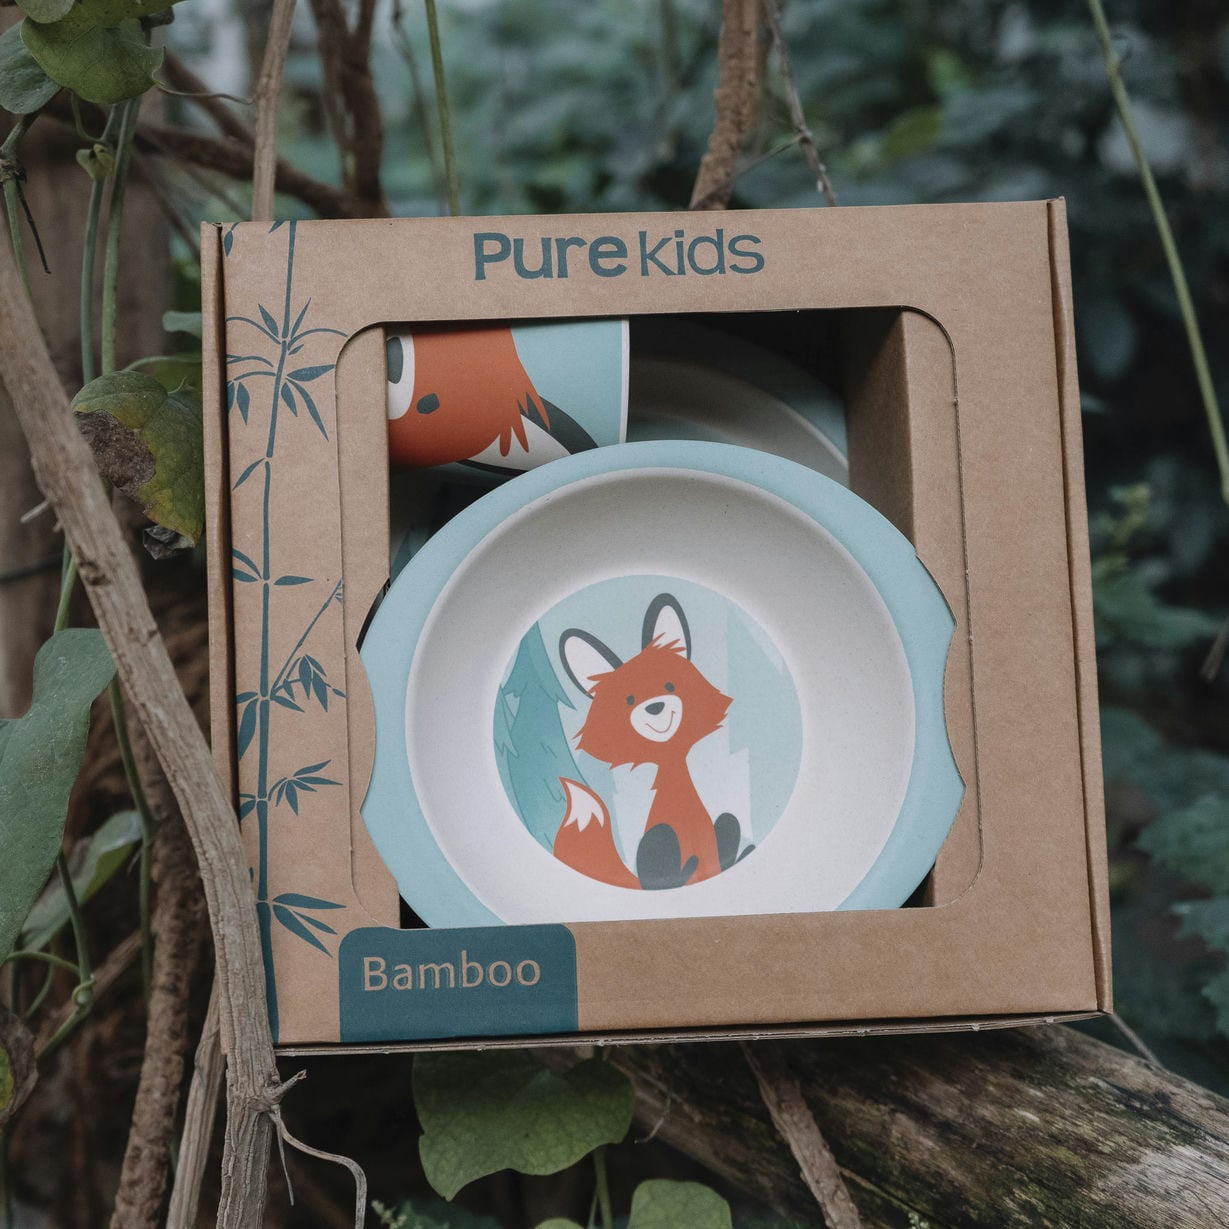 Het servies van Pure Kids ziet er leuk uit en is ook nog eens 100% afbreekbaar. 
Duurzaam eten met een leuk vossen servies. 